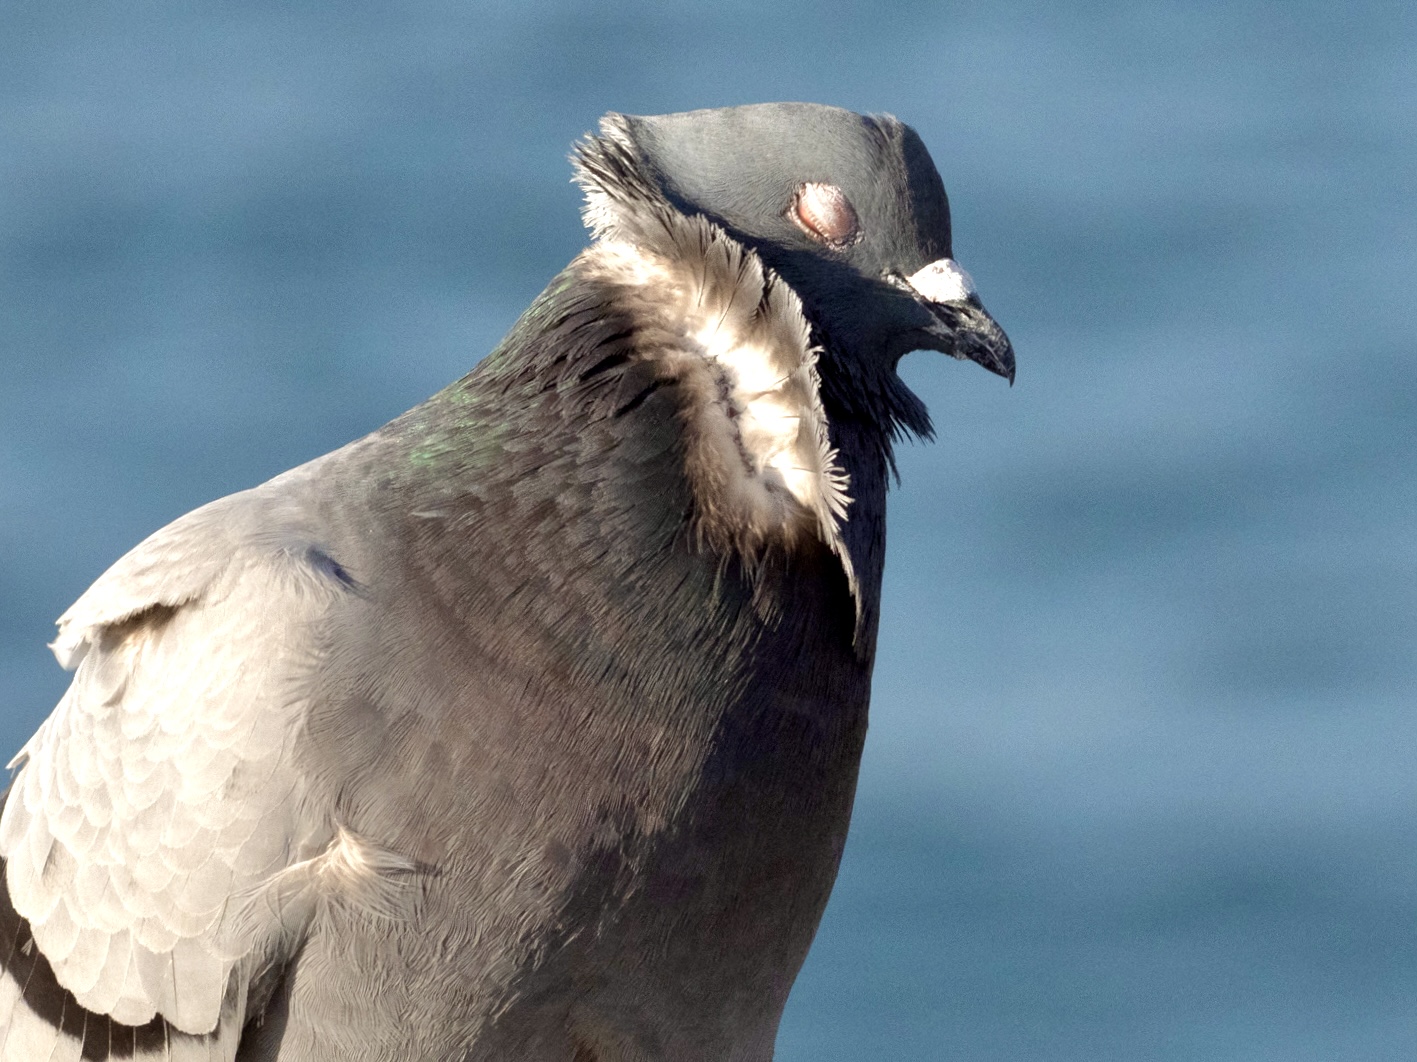 Windblown Pigeon on Cabrillo Pier in San Pedro